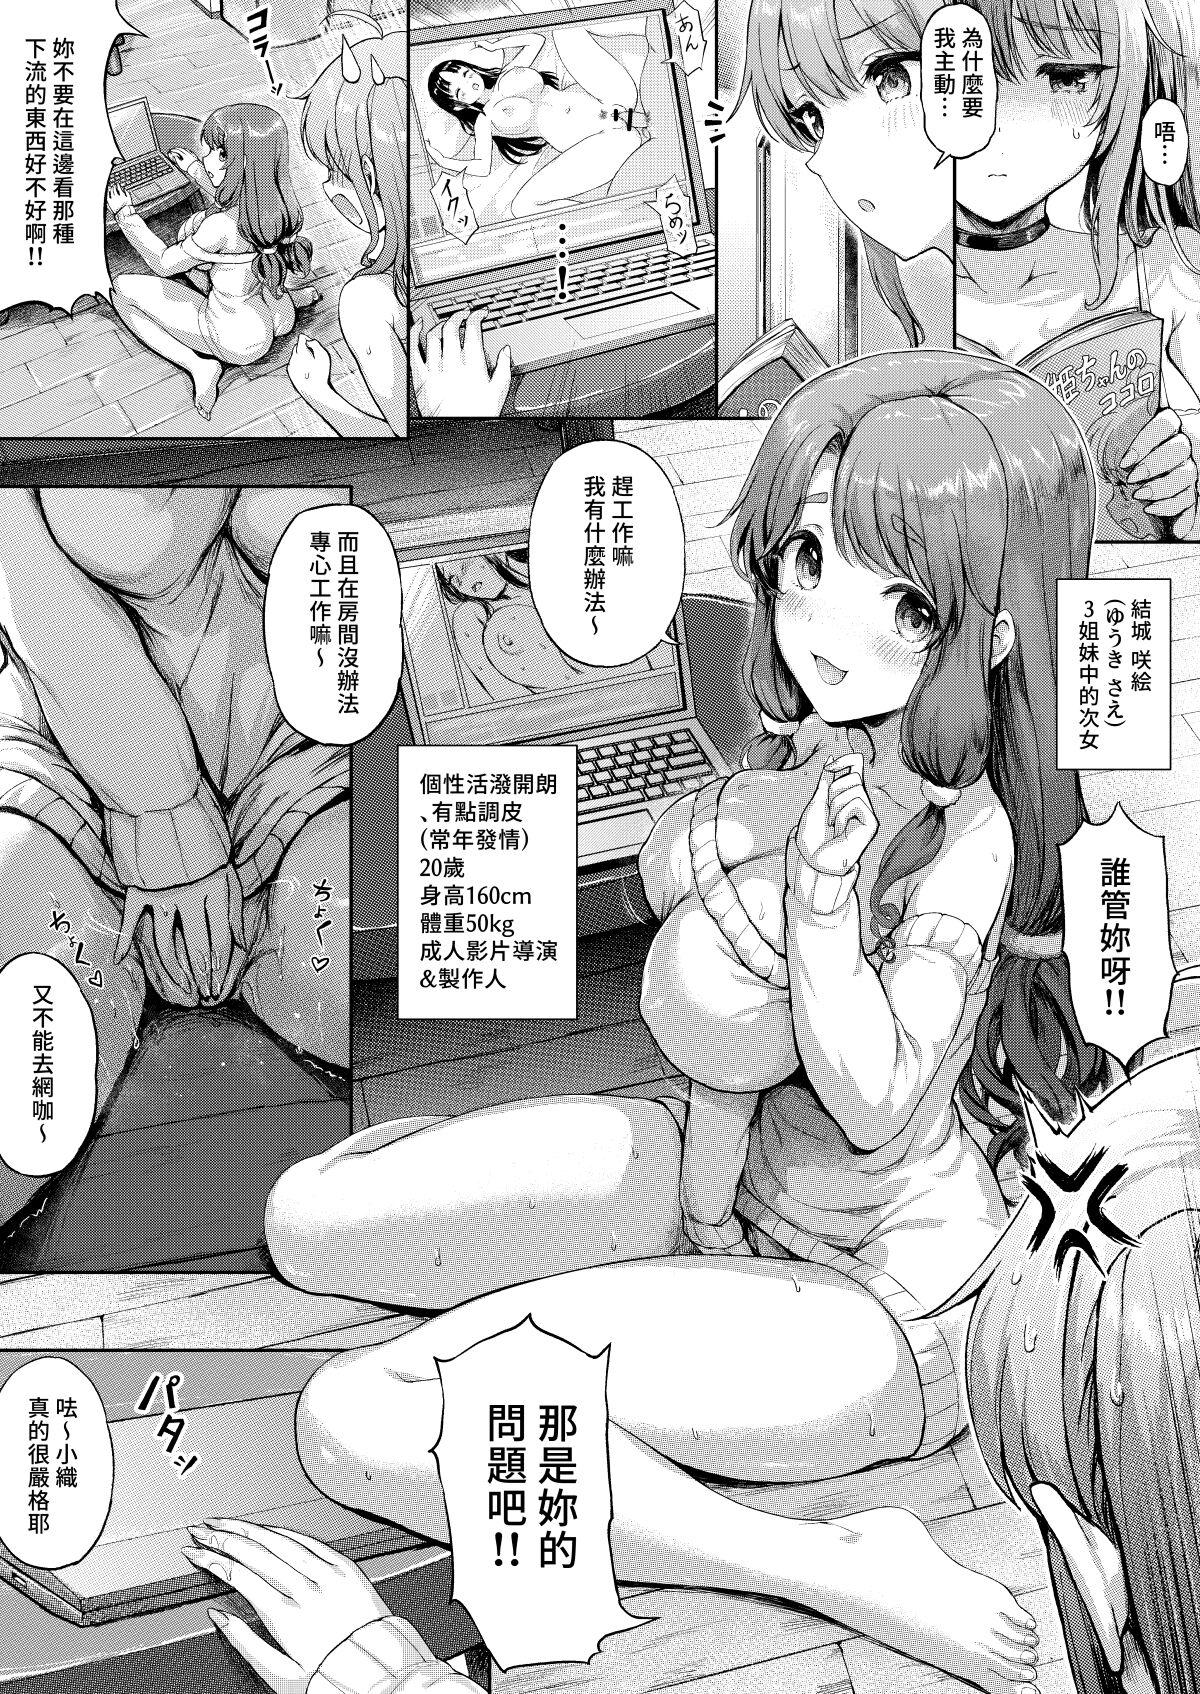 Assfingering Sanshimai Manga ep1 p1-9 - Original Cock Suck - Picture 2